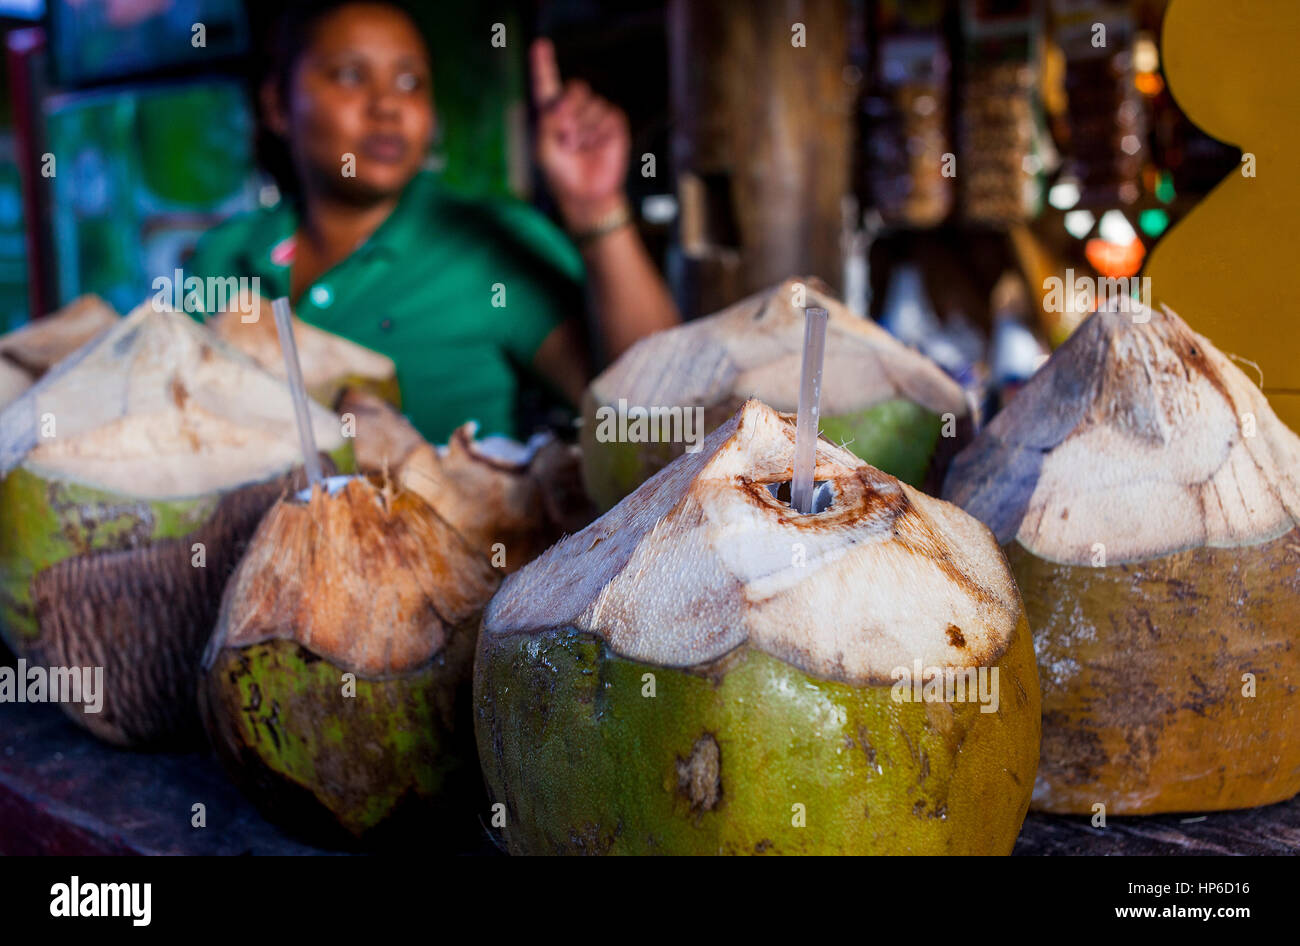 Stall, Frau, die grüne Kokosnuss verkauft, um ihr Wasser zu trinken, in Bavaro oder Bibijagua Strand, Punta Cana, Dominikanische Republik Stockfoto